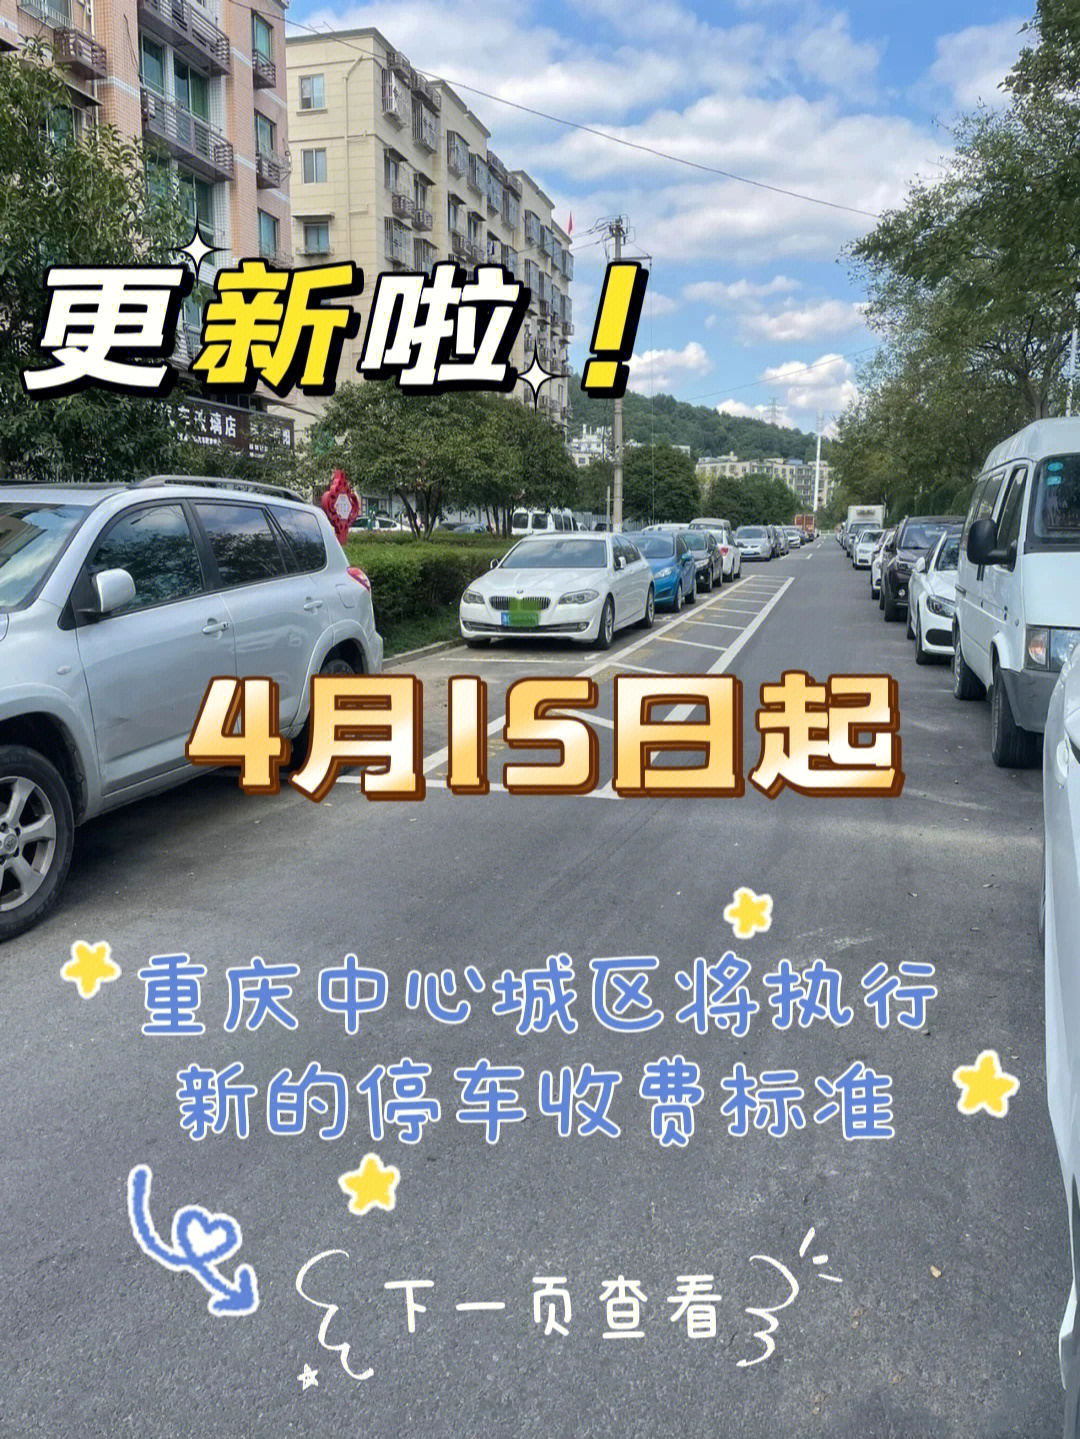 重庆中心城区将执行新的停车收费标准